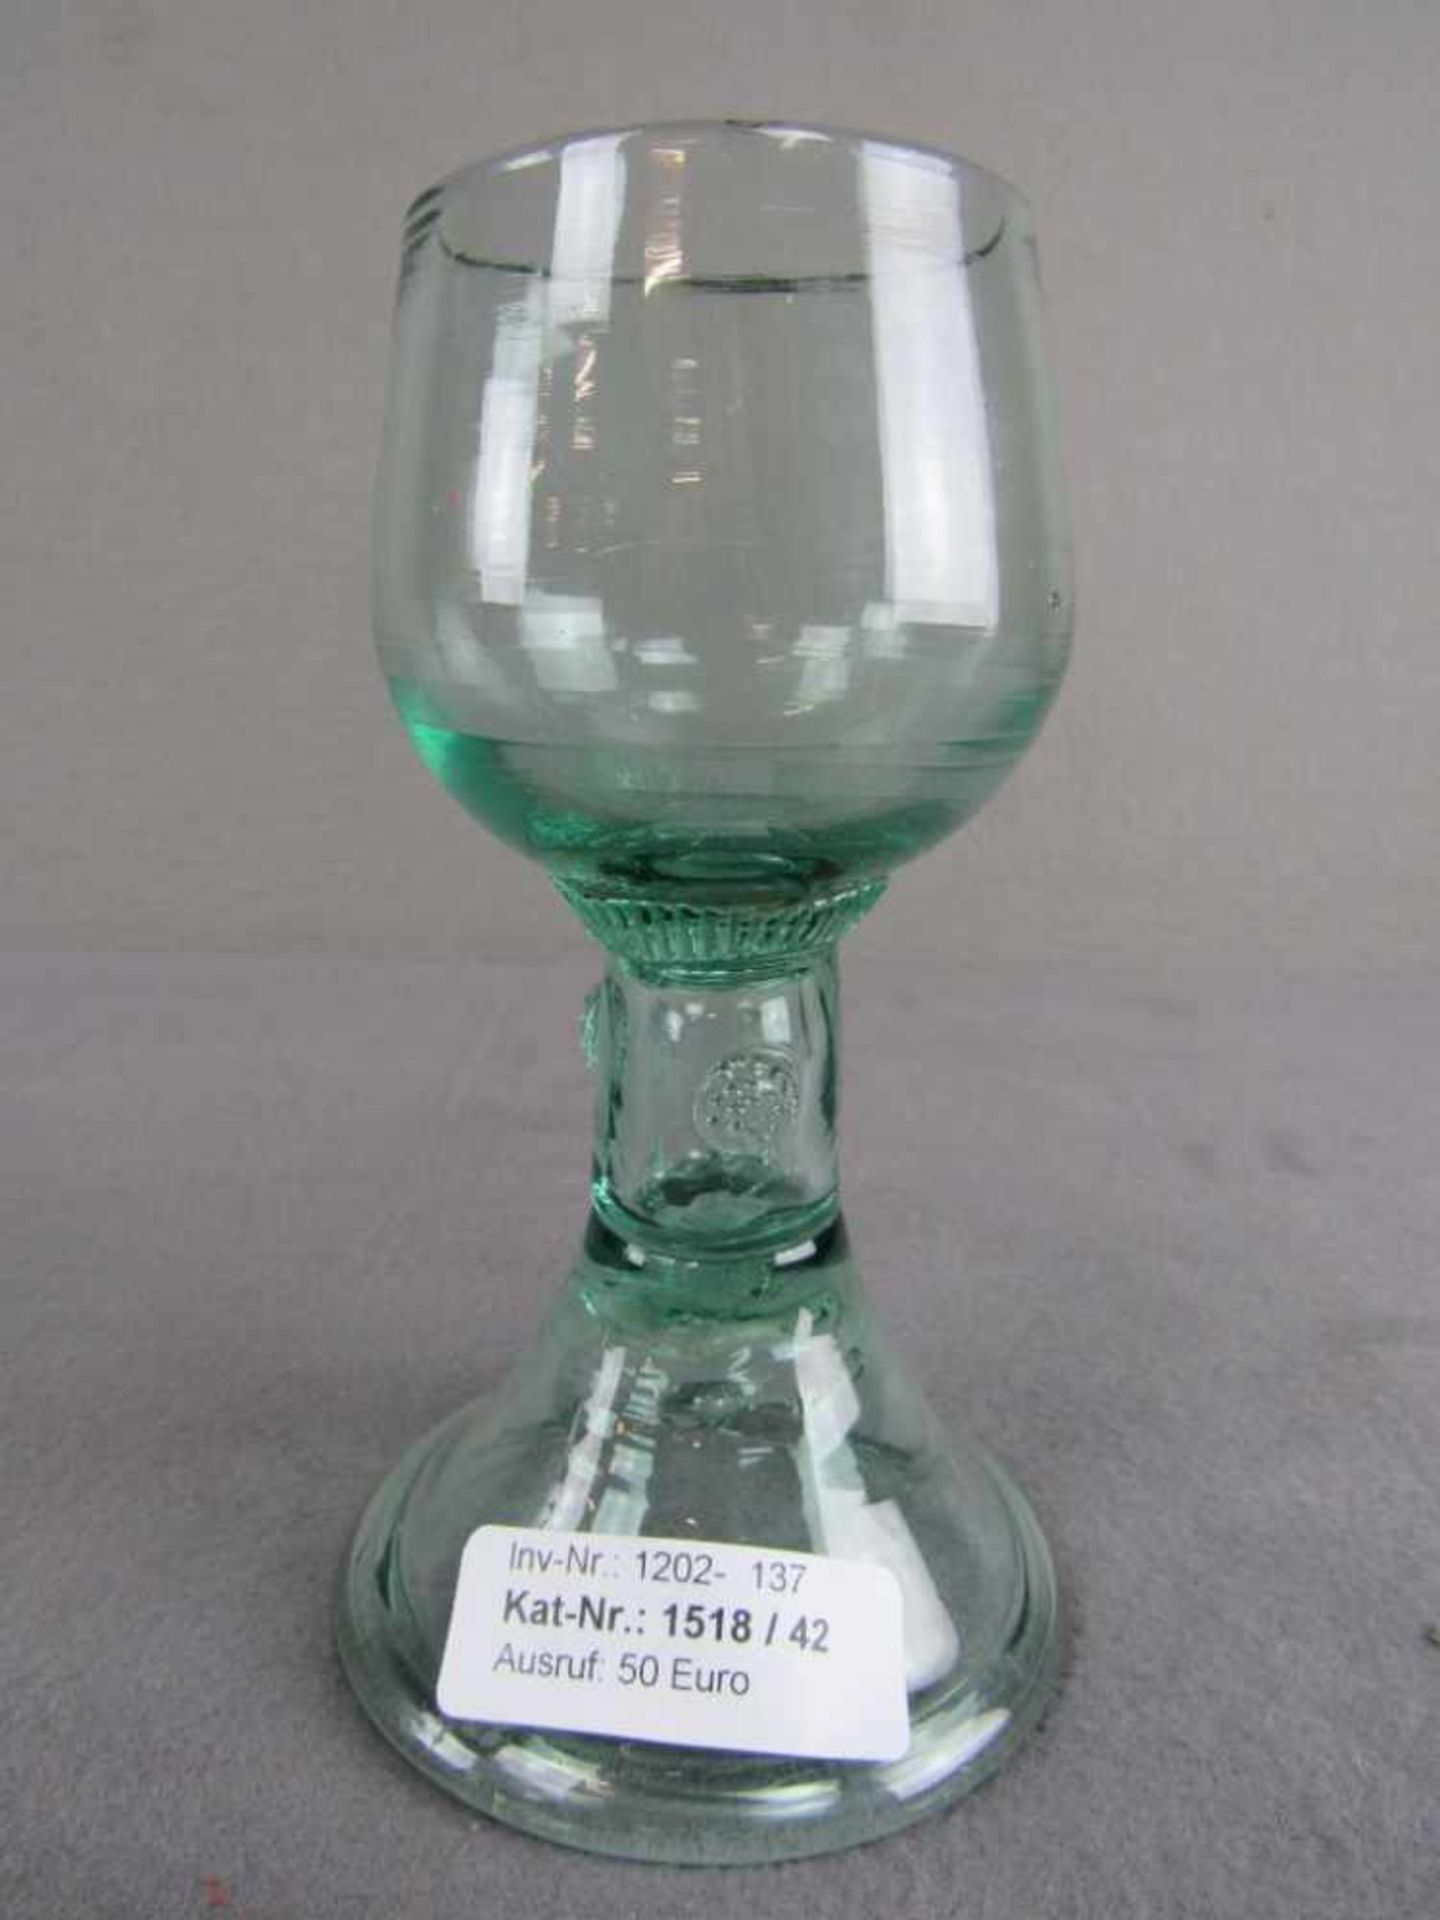 Antikes Pokalglas leichter Chip Lufteinschlüsse 16cm hoch- - -20.00 % buyer's premium on the